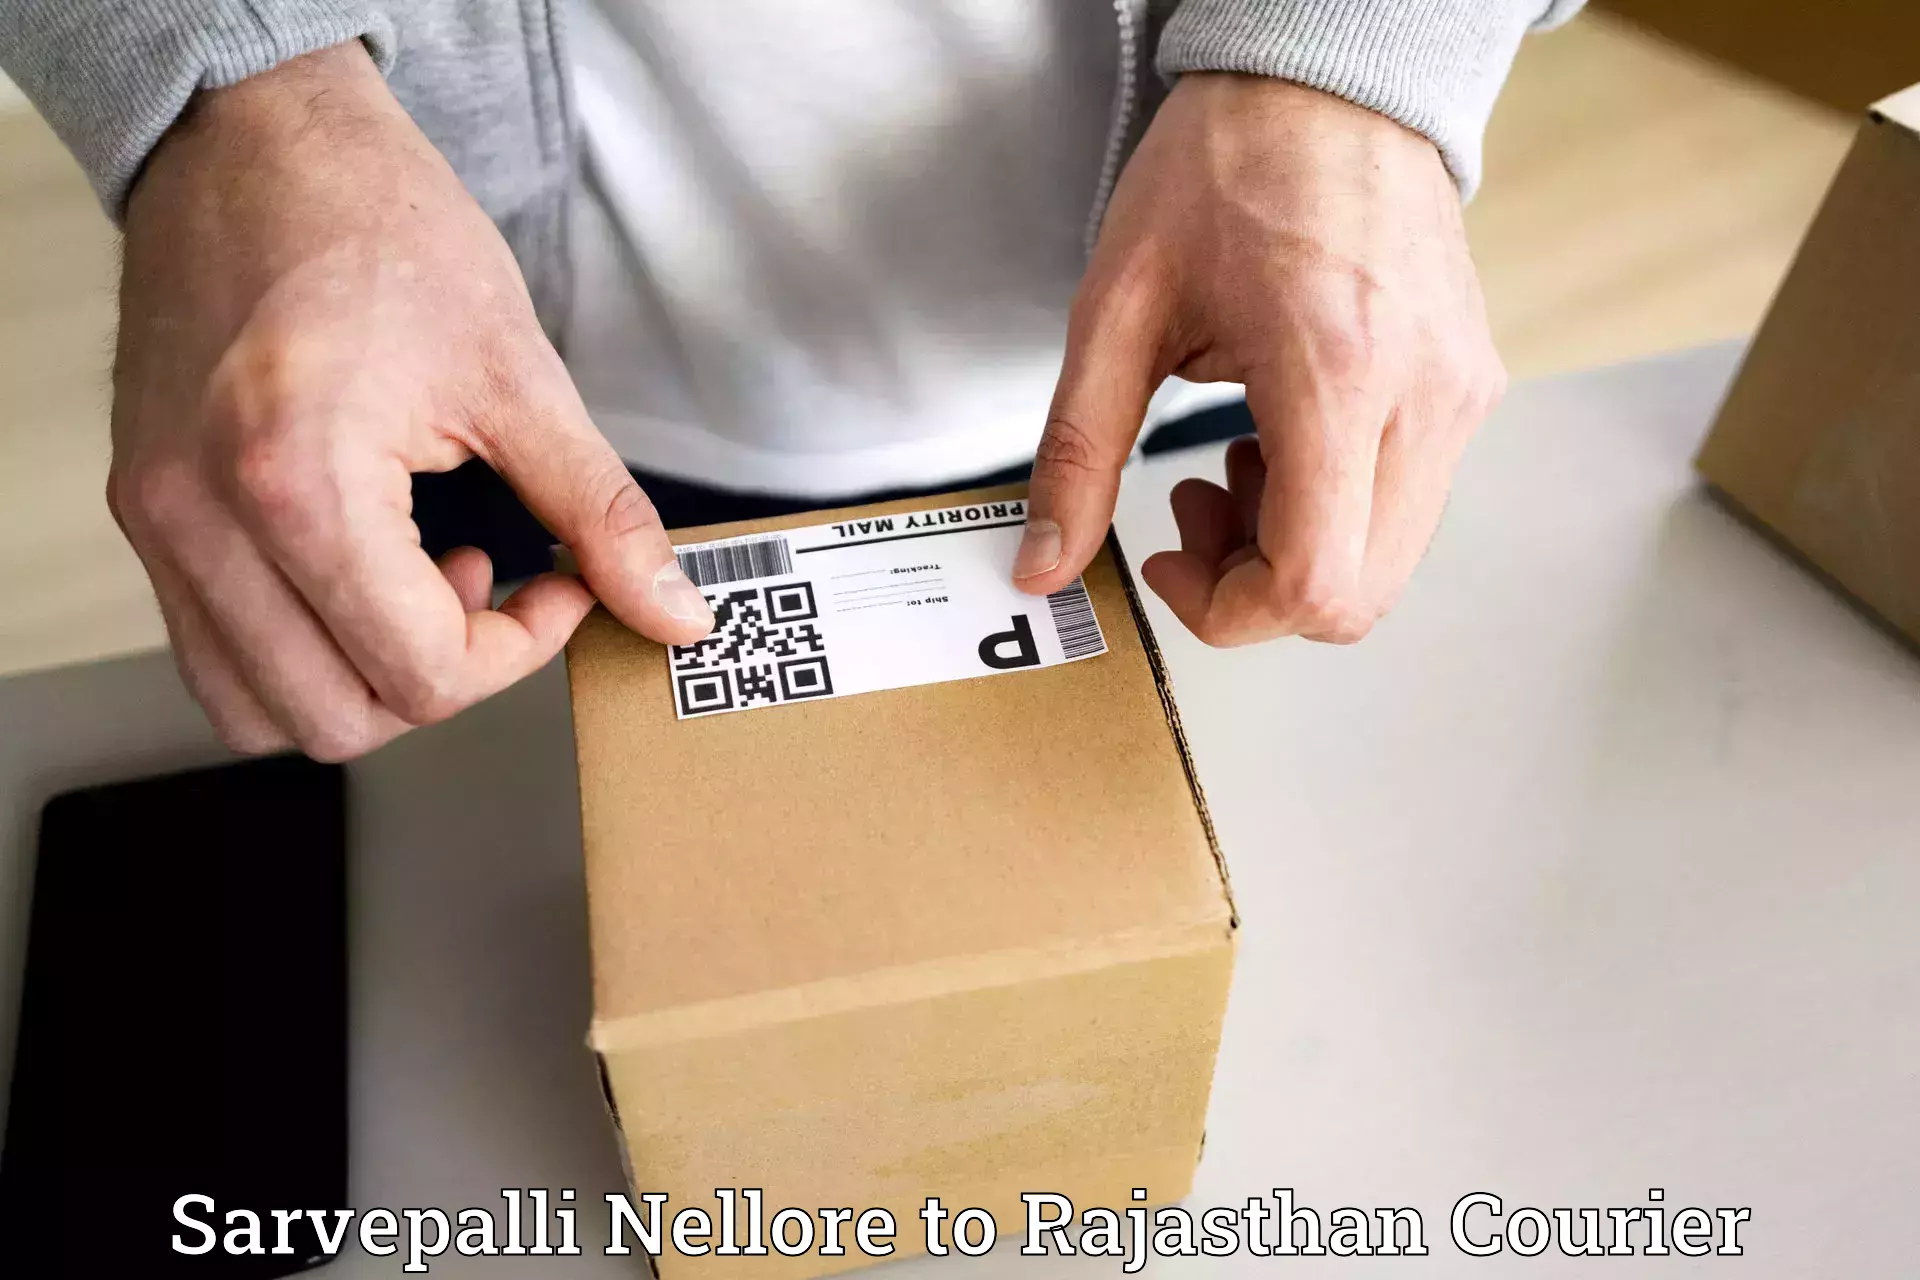 Cash on delivery service Sarvepalli Nellore to Chaksu